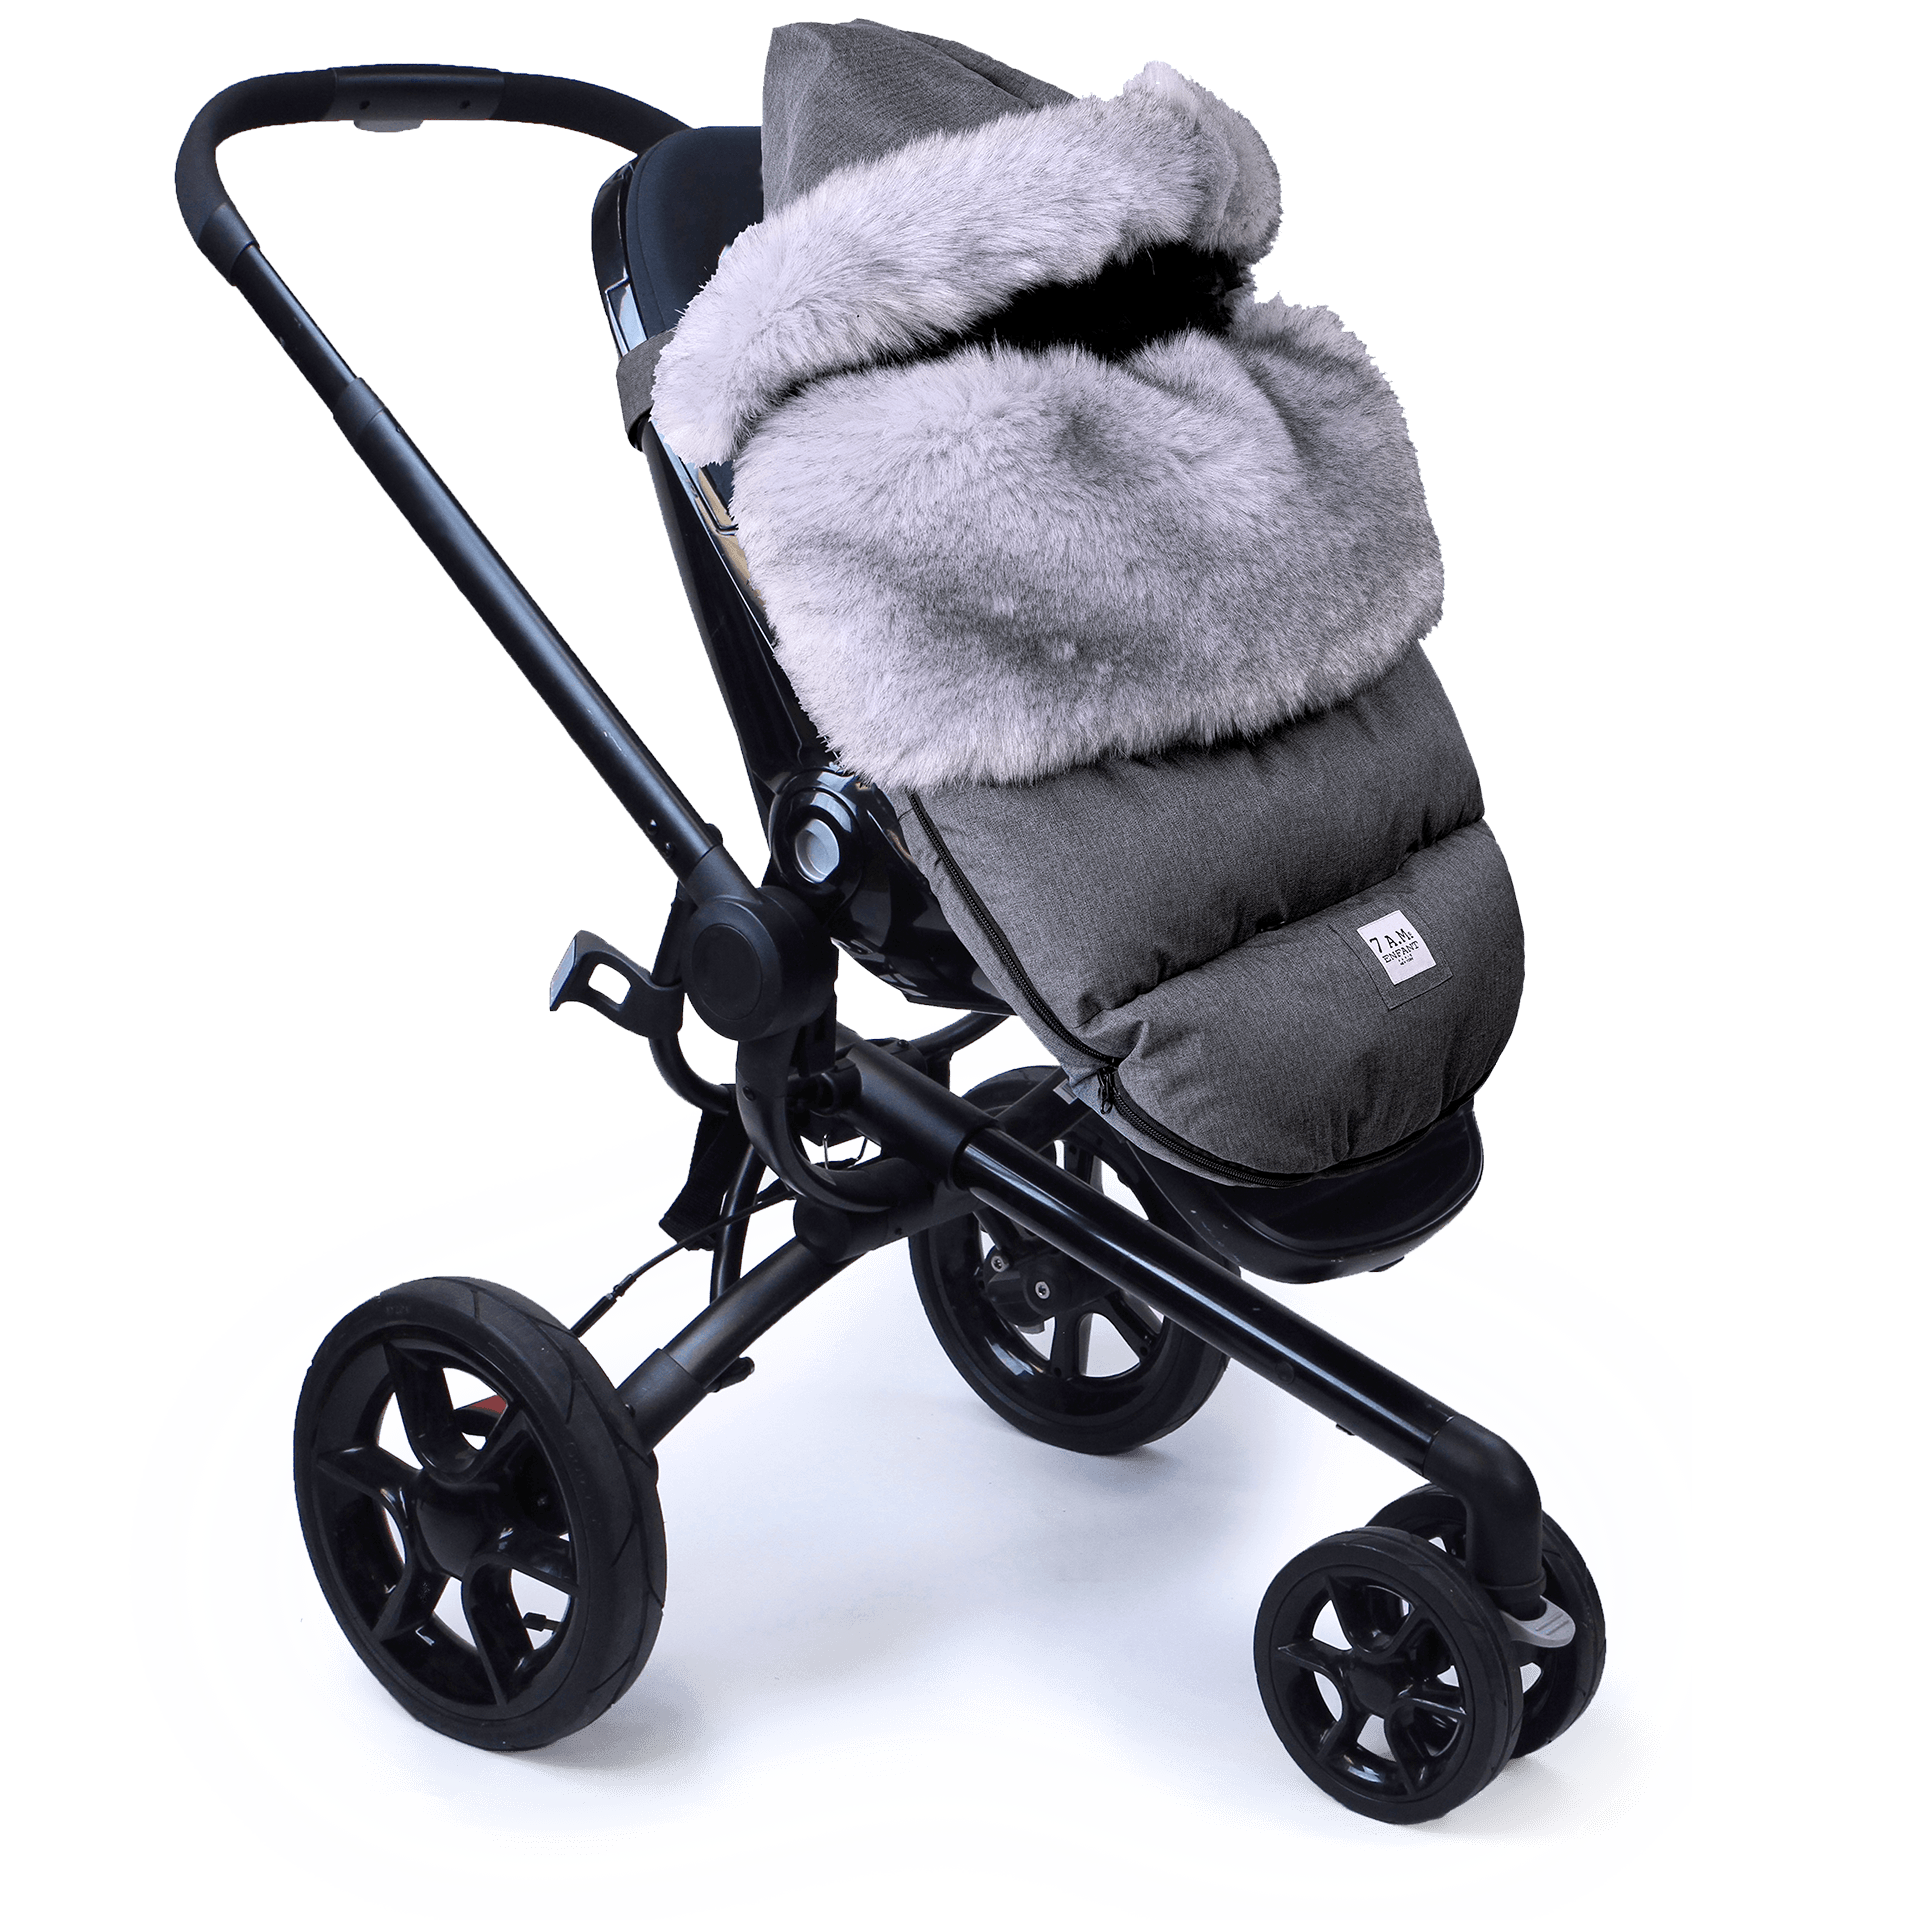 7 AM Enfant PlushPOD Tundra Stroller and Car Seat Footmuff, Heather Grey - ANB Baby -7 AM enfant PlushPOD Tundra